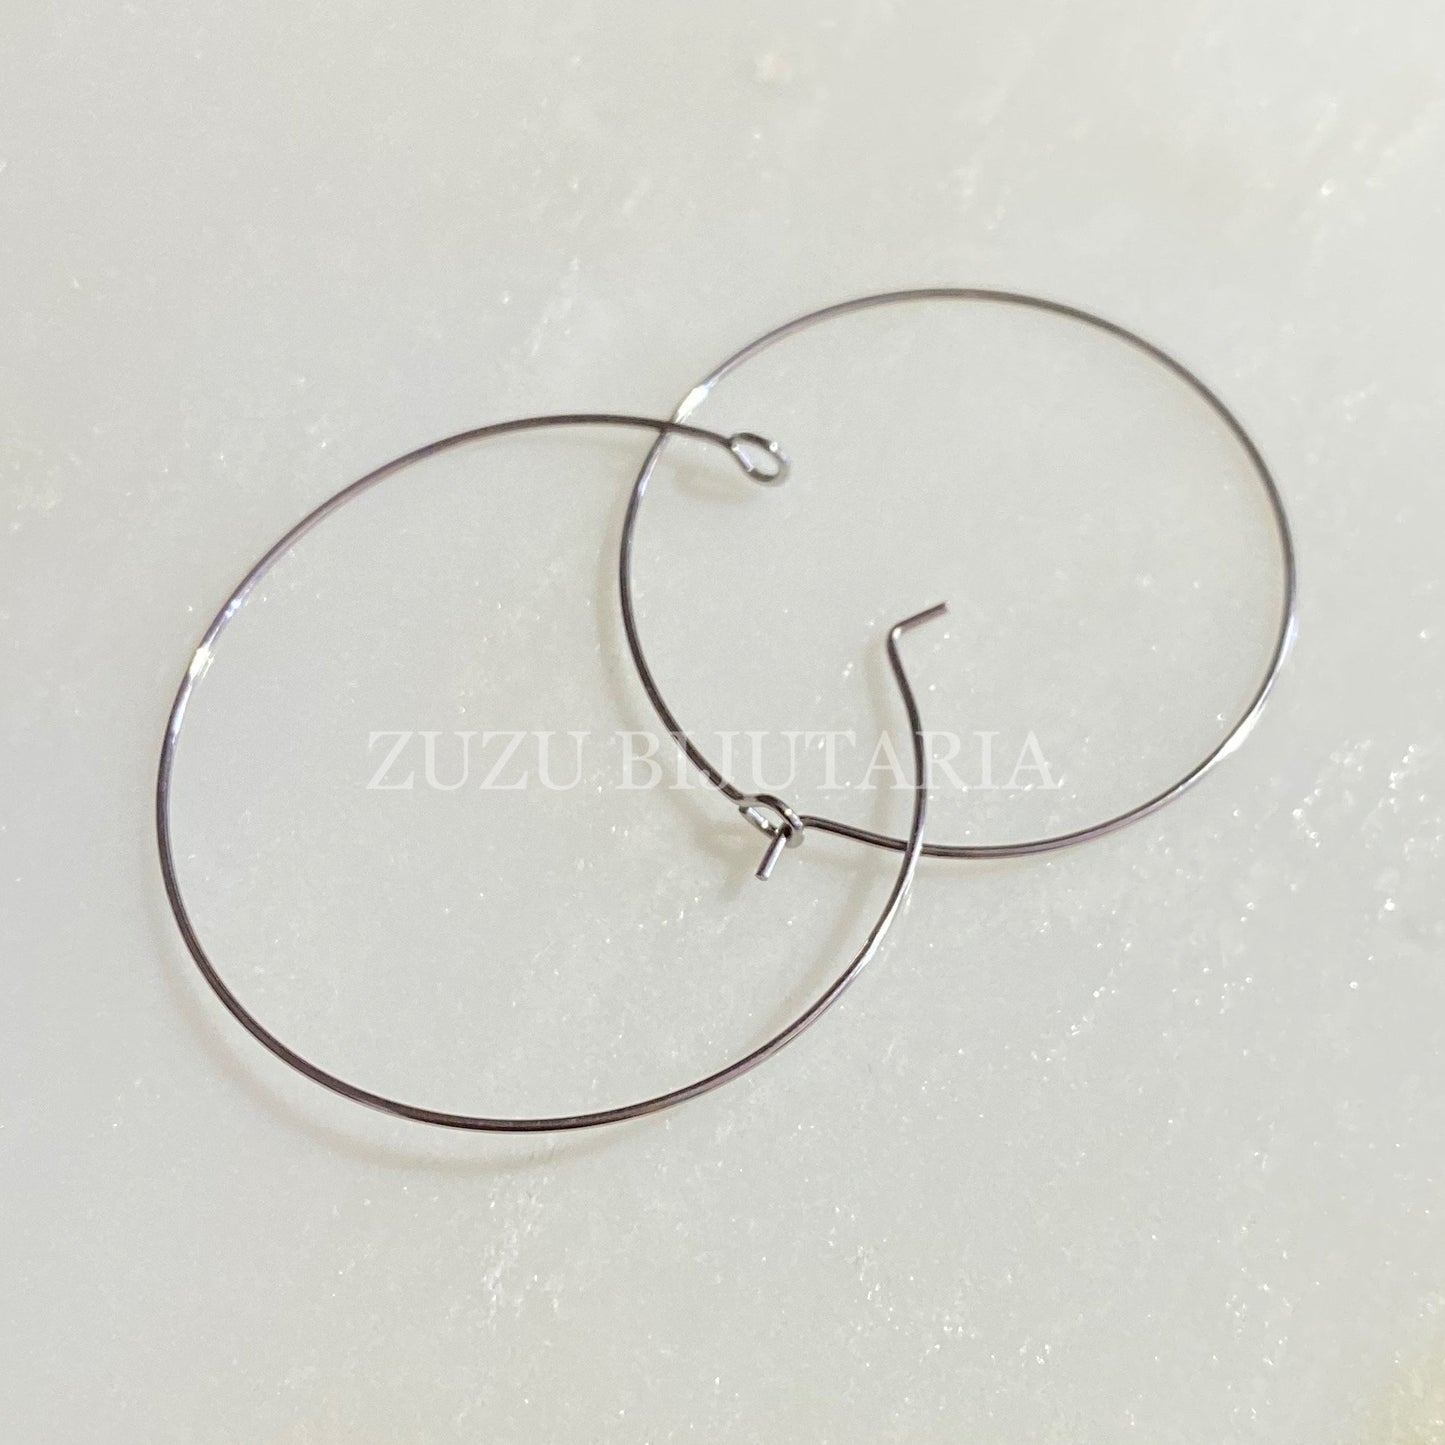 Fine Hoop Earring 1mm Silver - 20 pairs